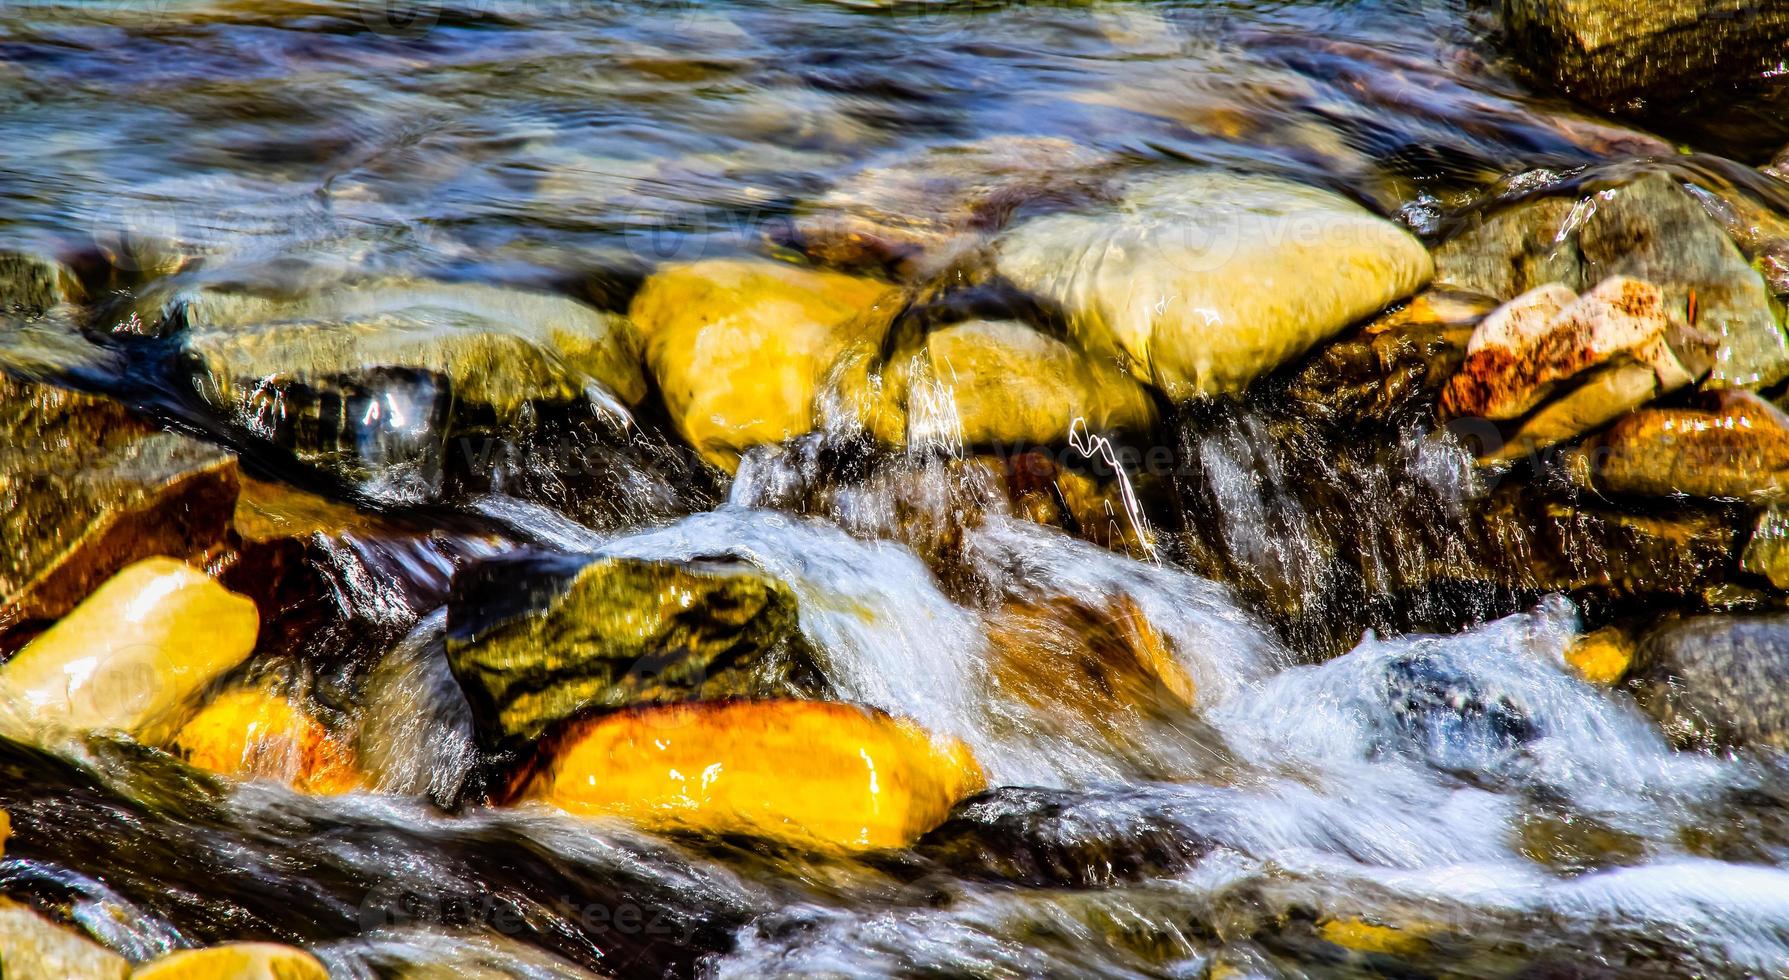 água correndo pelas rochas no riacho bragg foto